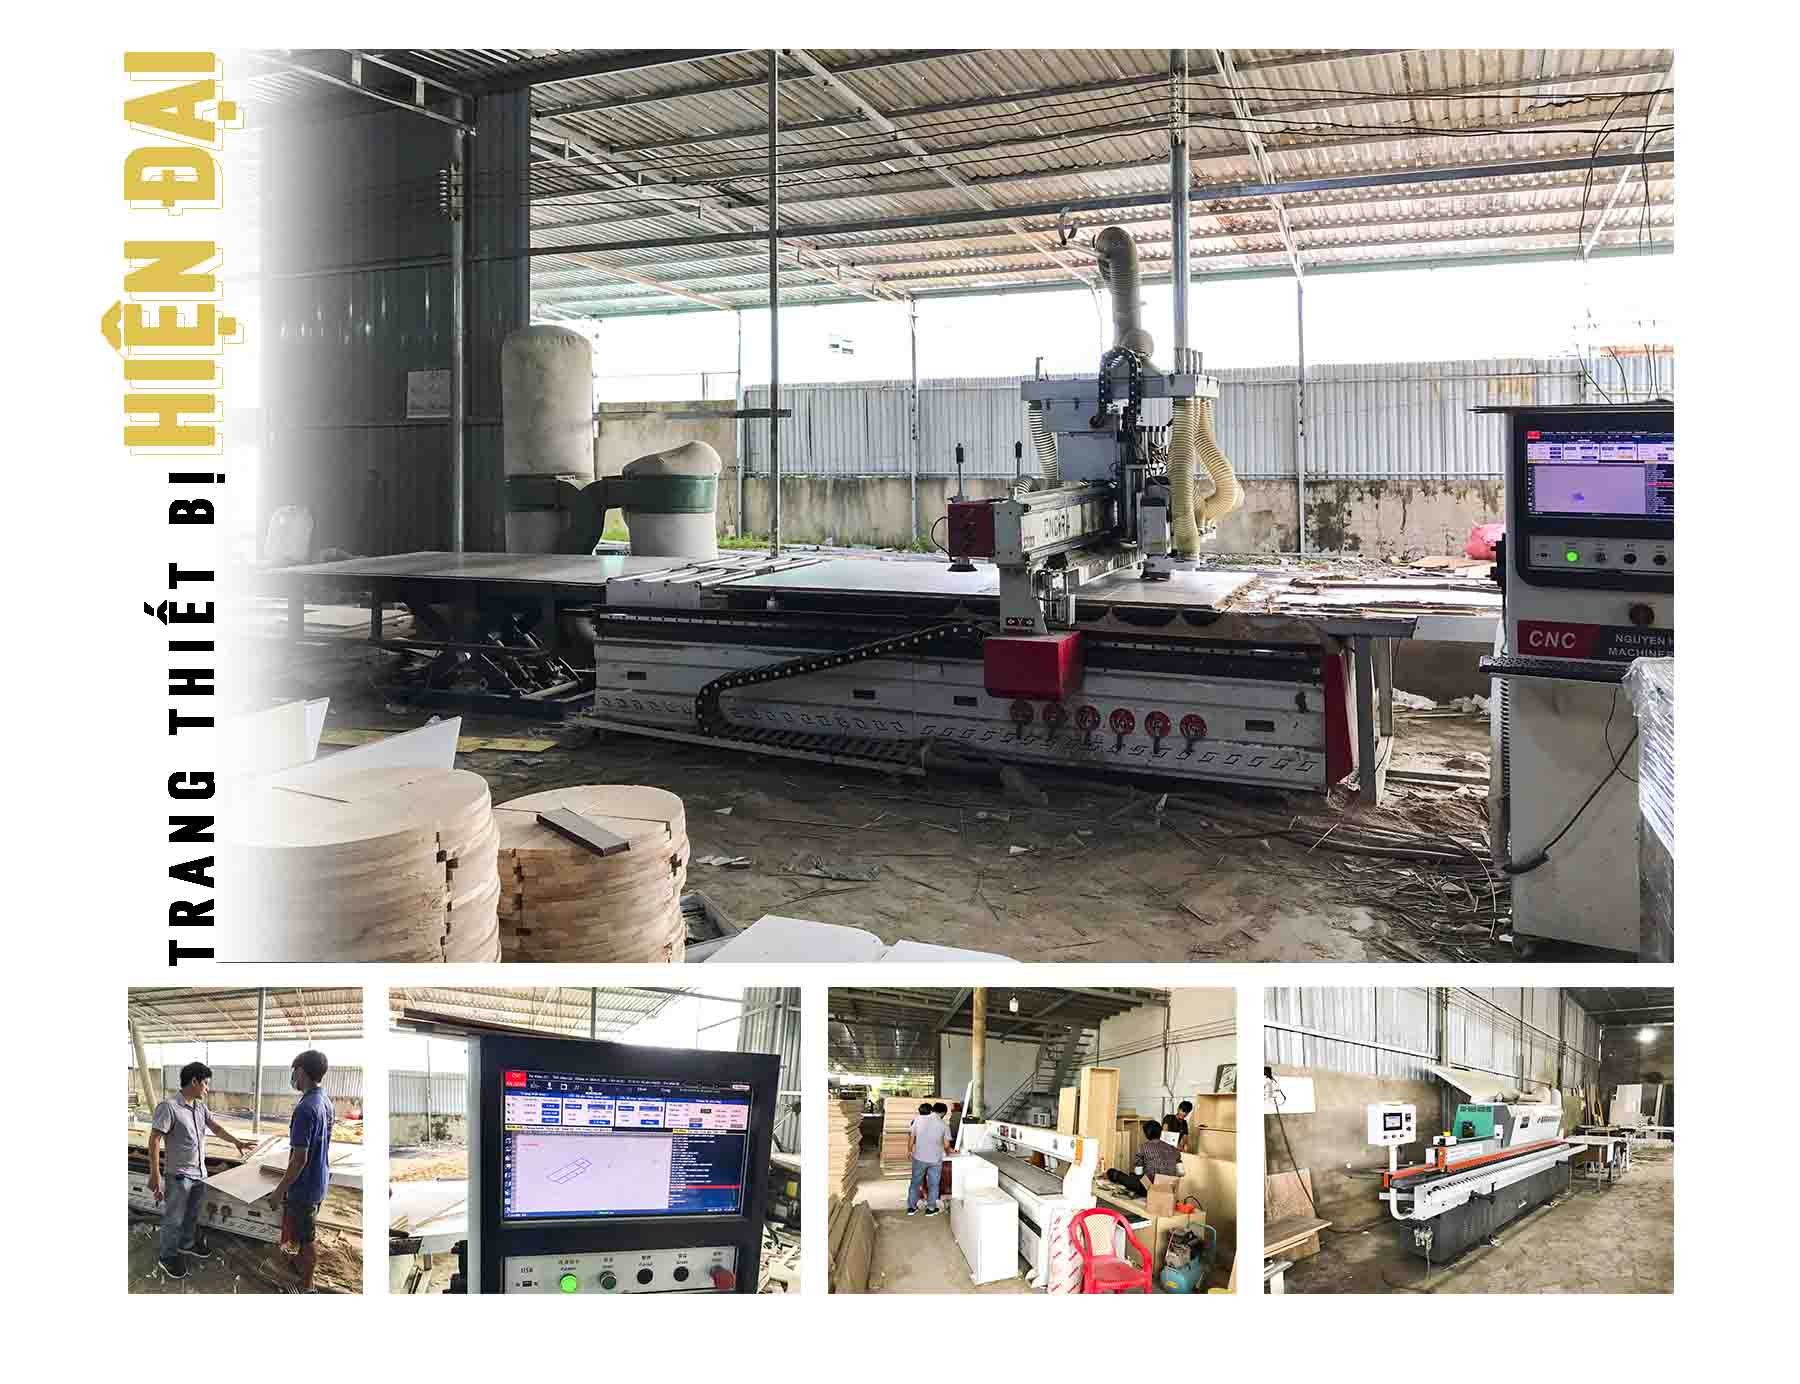 Xưởng sản xuất của Hoàng Kim Design sở hữu nhiều trang thiết bị, máy móc hiện đại